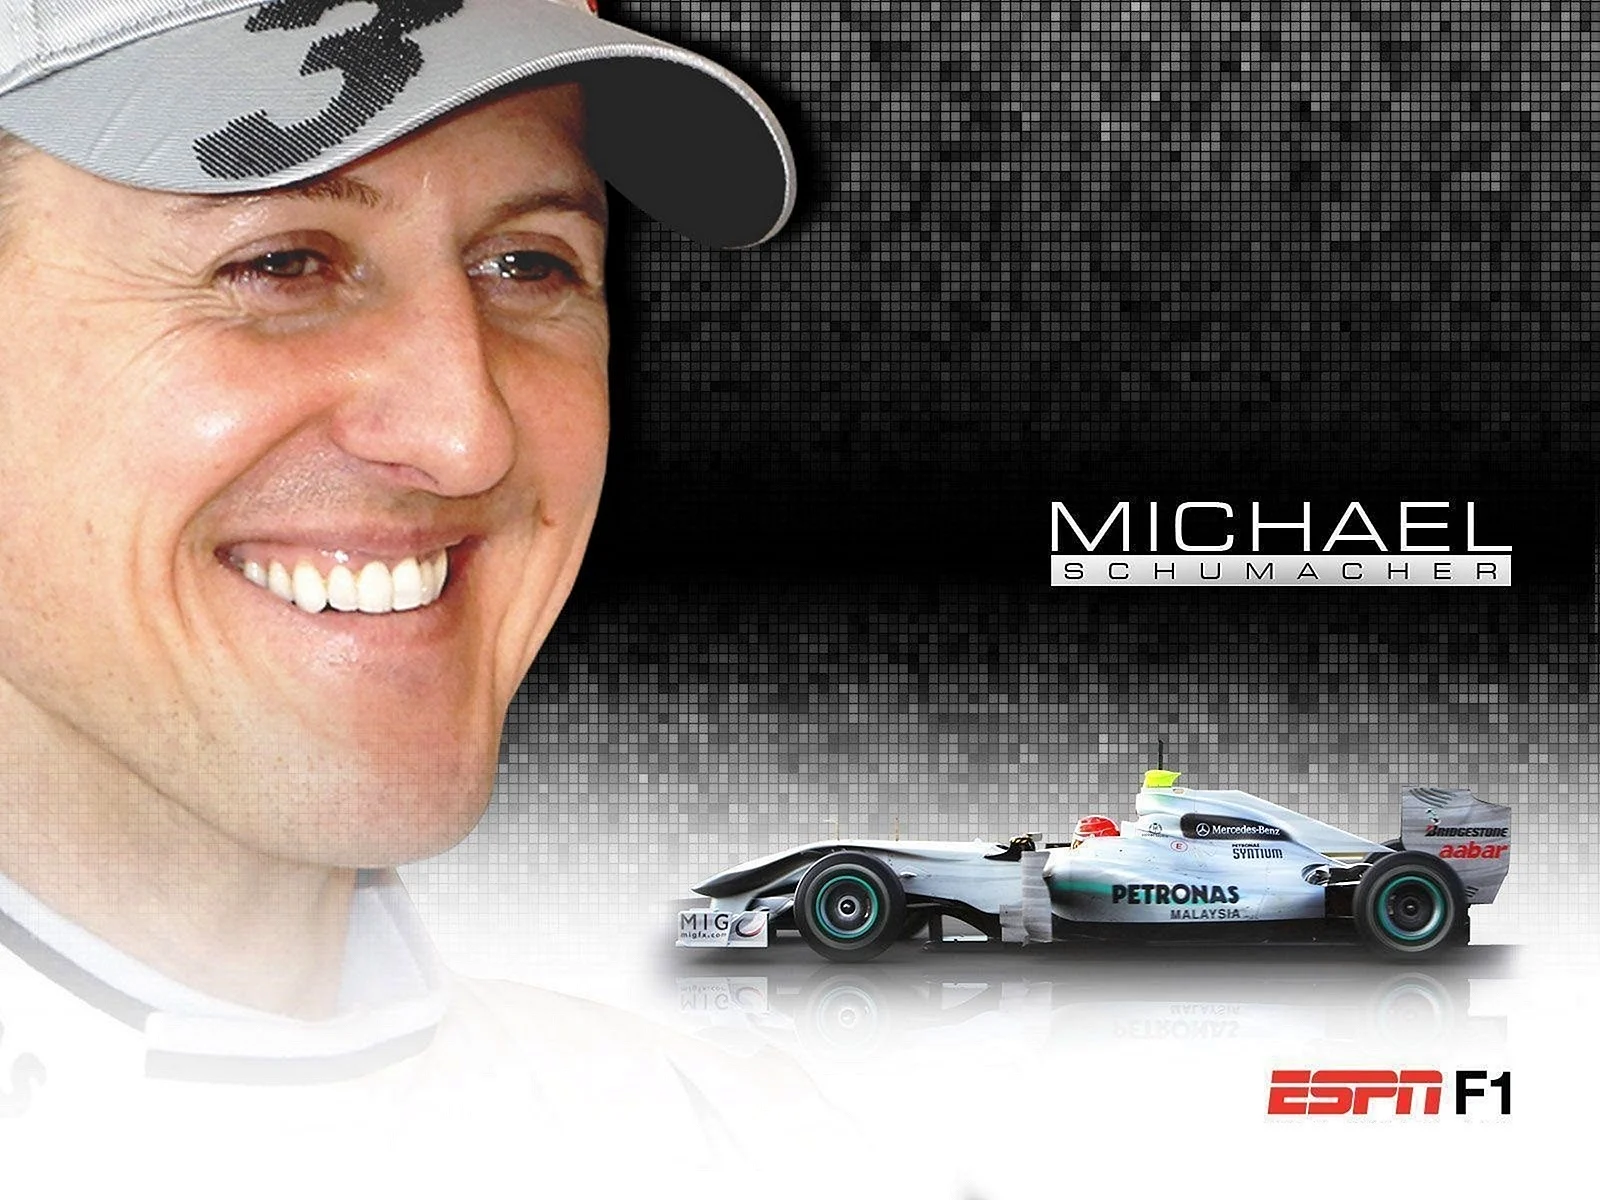 Michael Schumacher 2010 Wallpaper